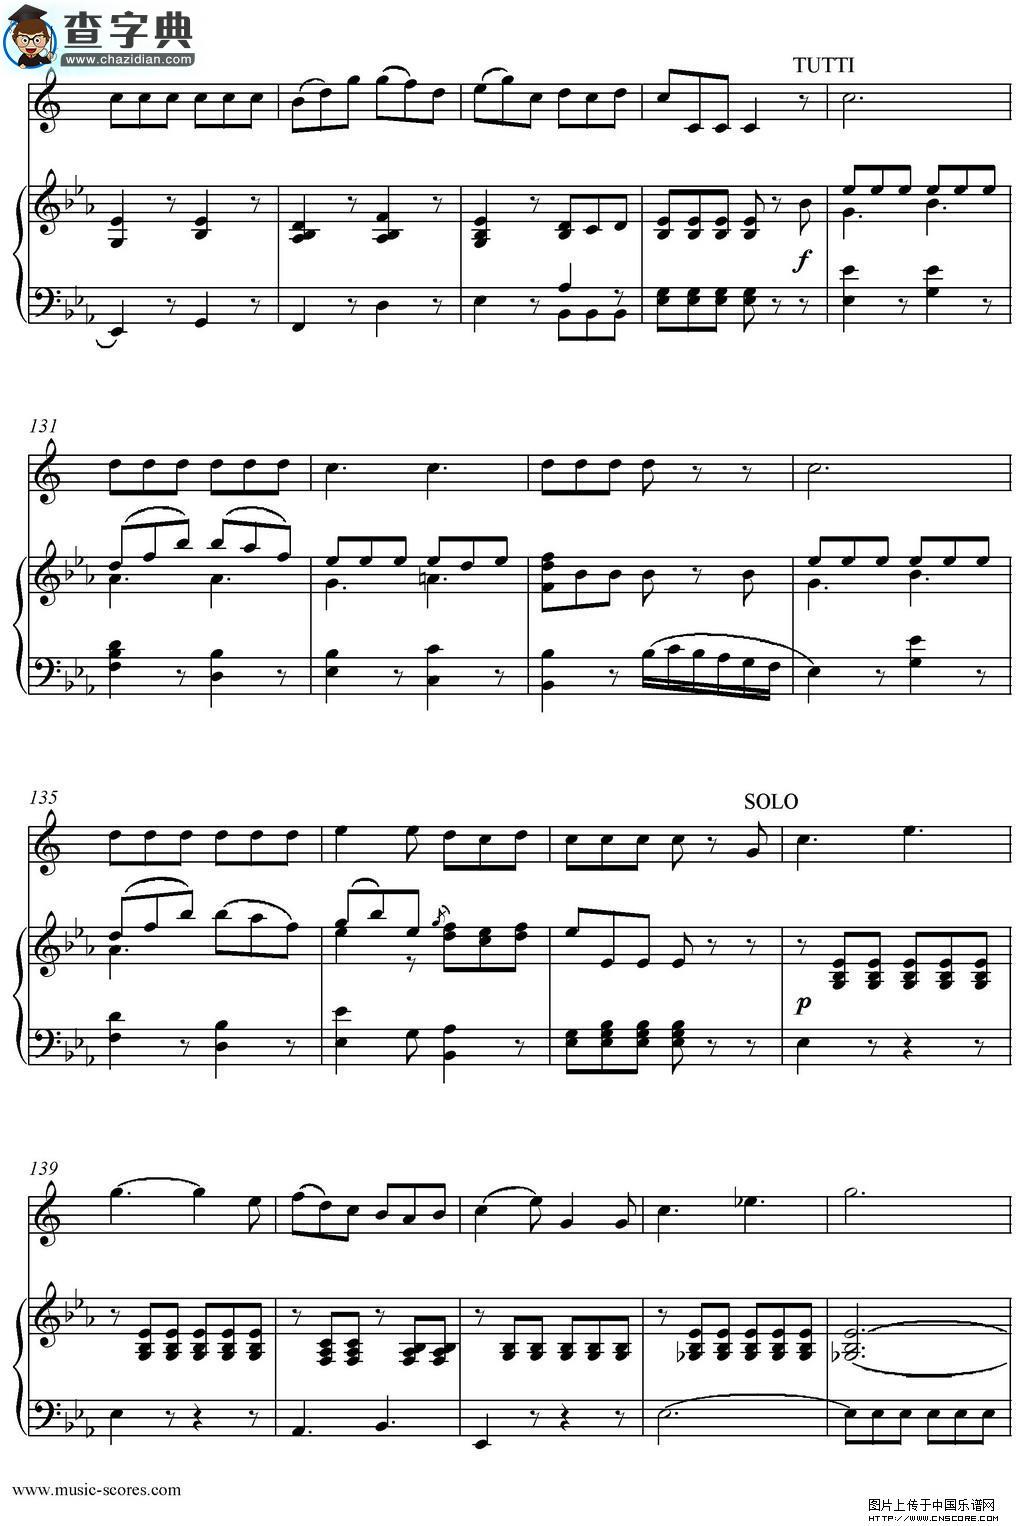 Mozart：Concerto KV495 No.4-3st Rondo 回旋曲萨克斯谱